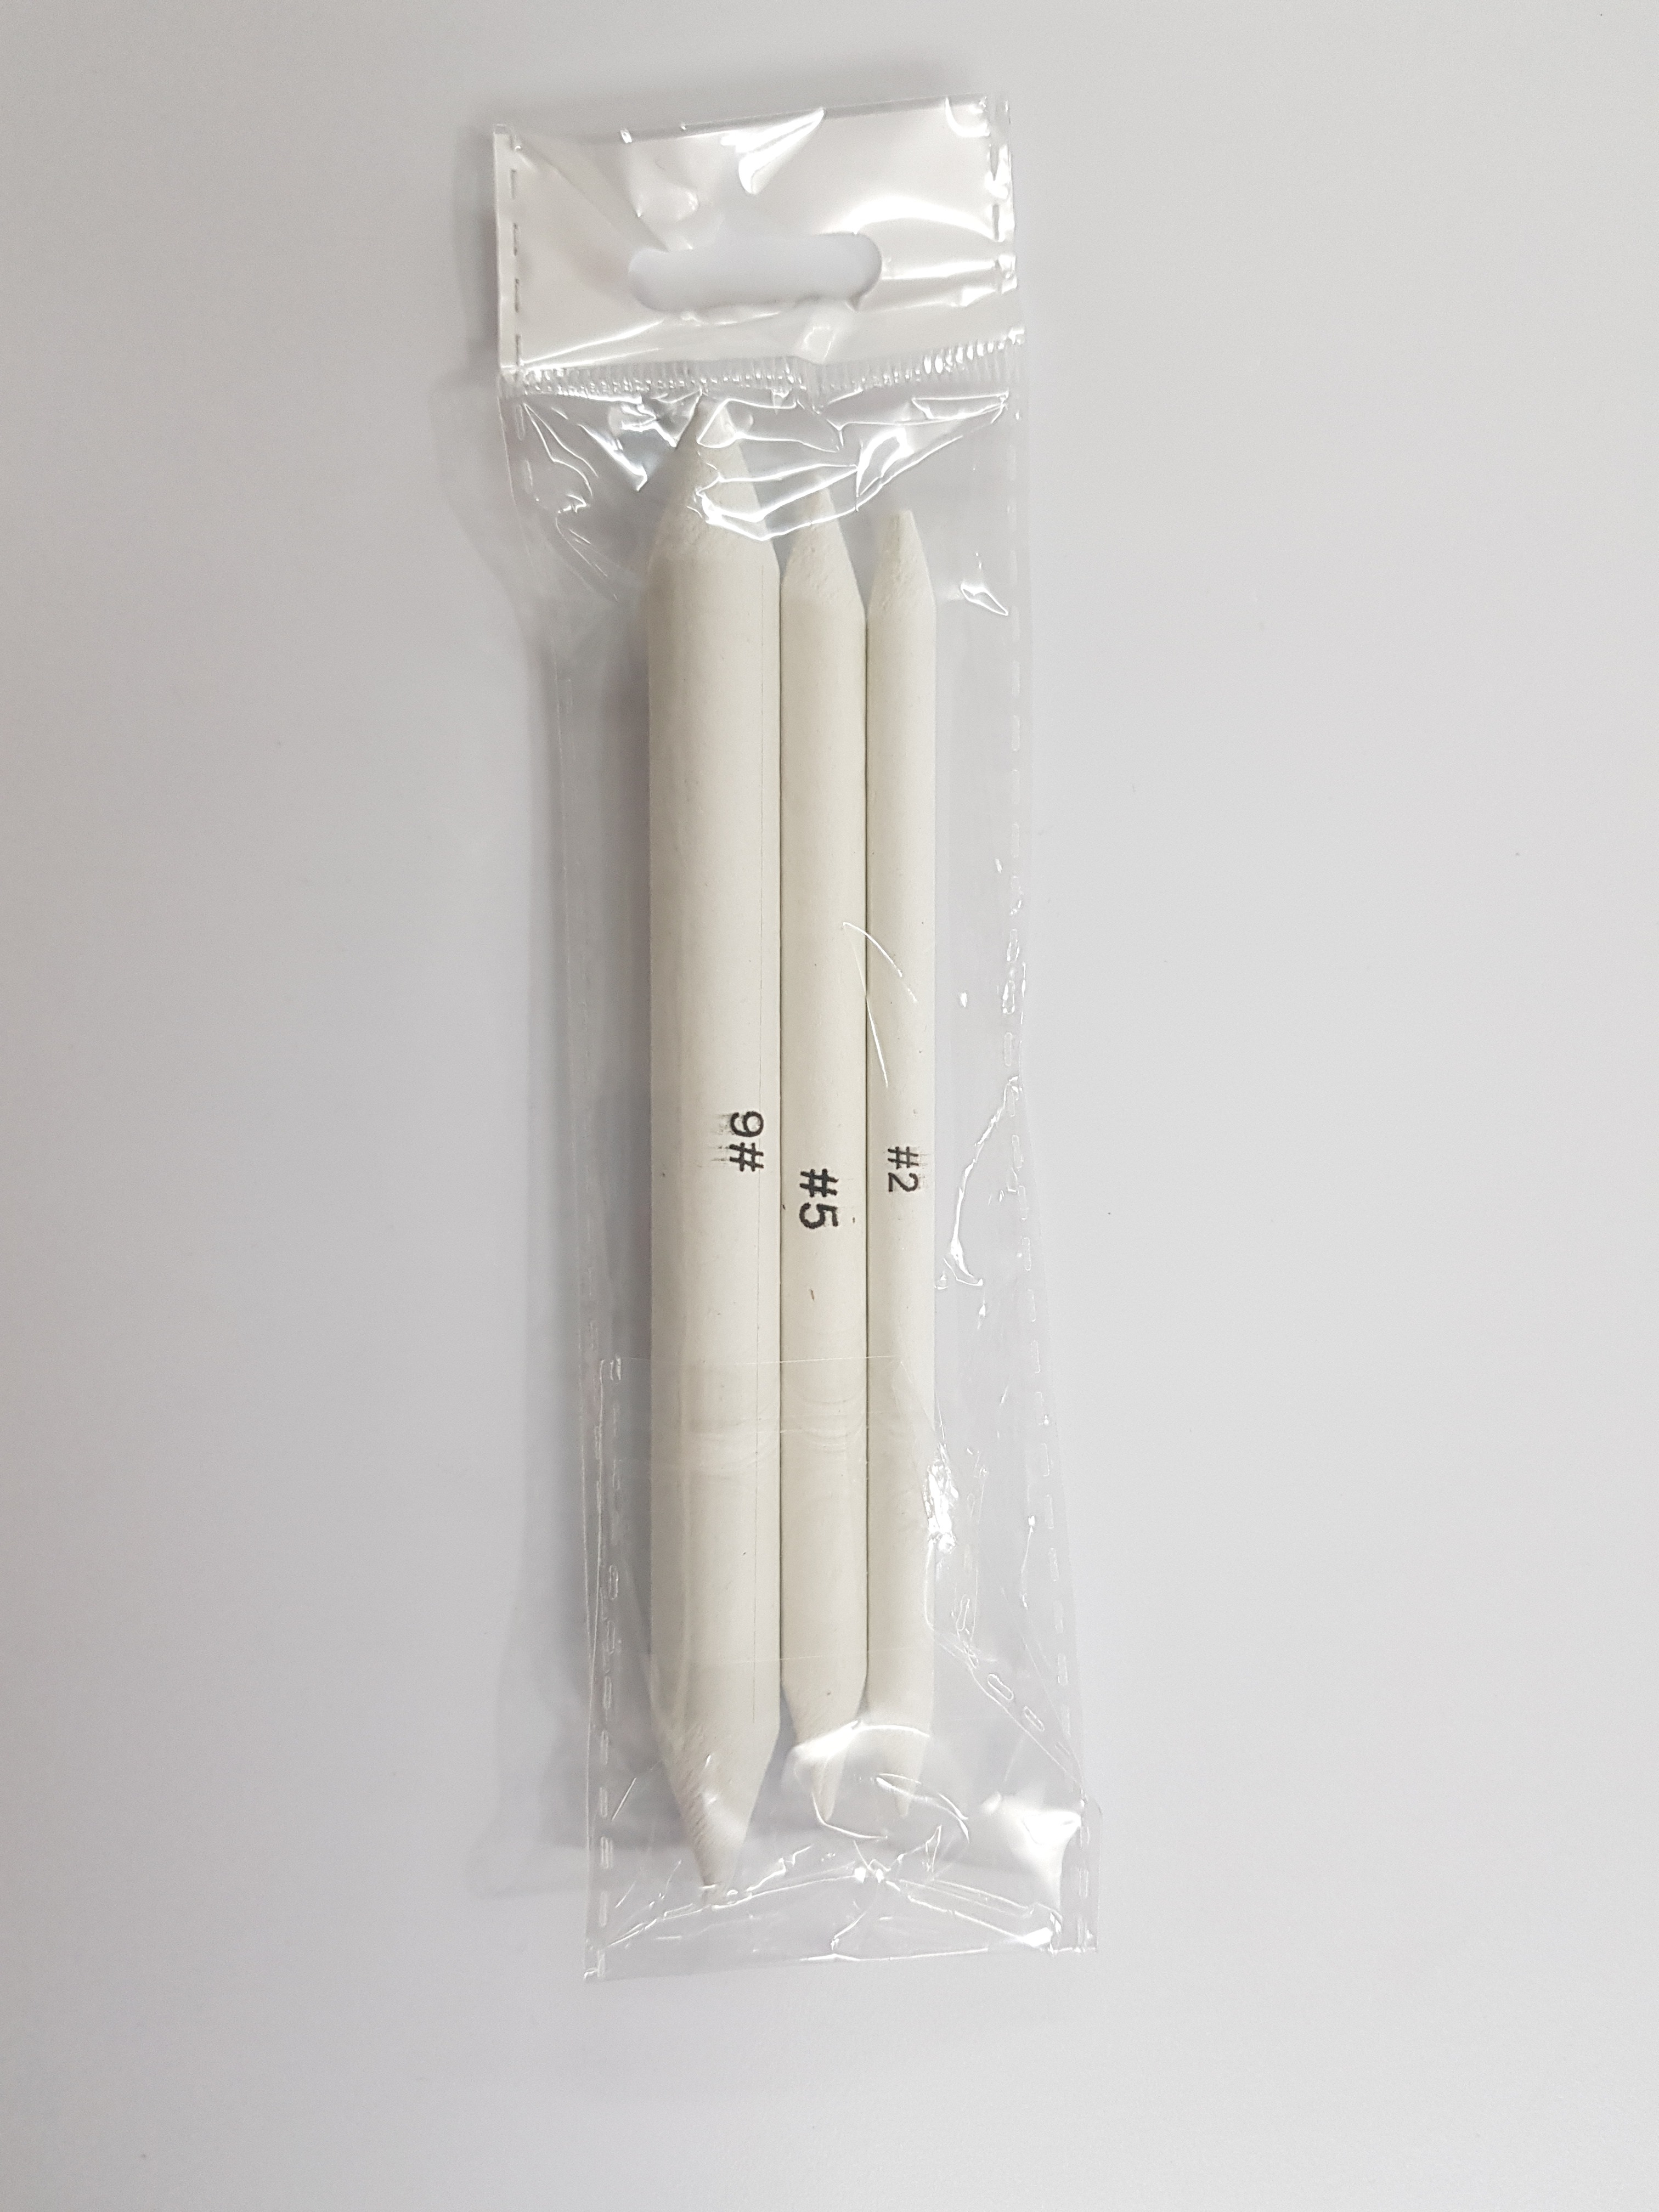 3/6Pcs Blending Smudge Stump Stick Tortillon Paper Pencils Erasers